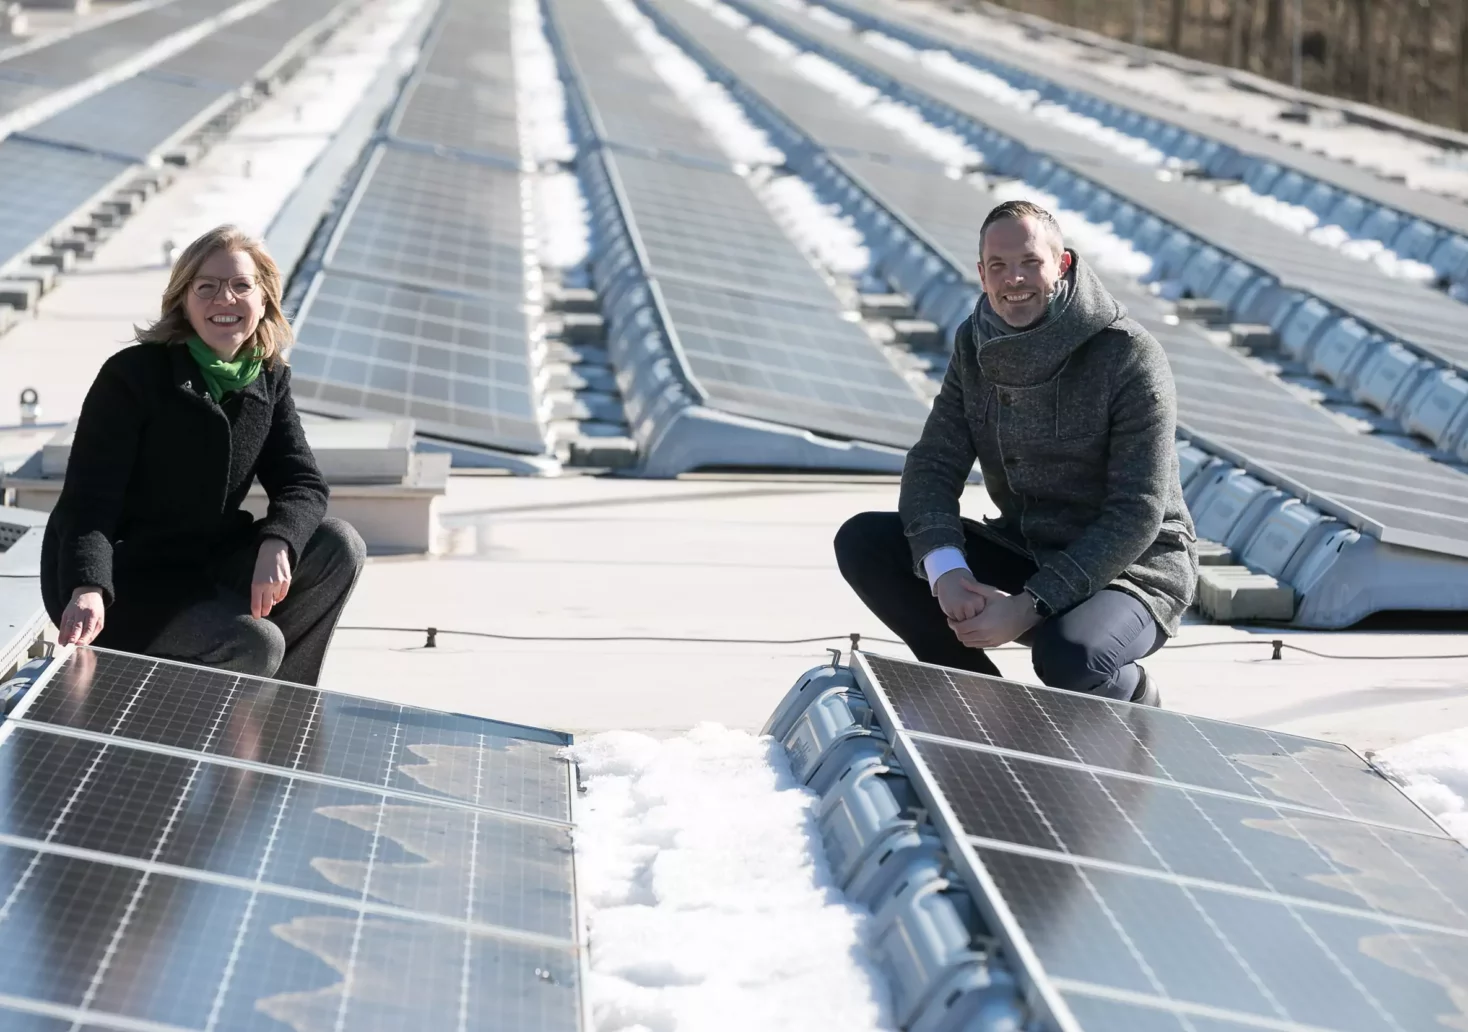 Foto in Beitrag von 5min.at: Zu sehen sind mehrere Photovoltaik-Anlagen mit zwei Männern.